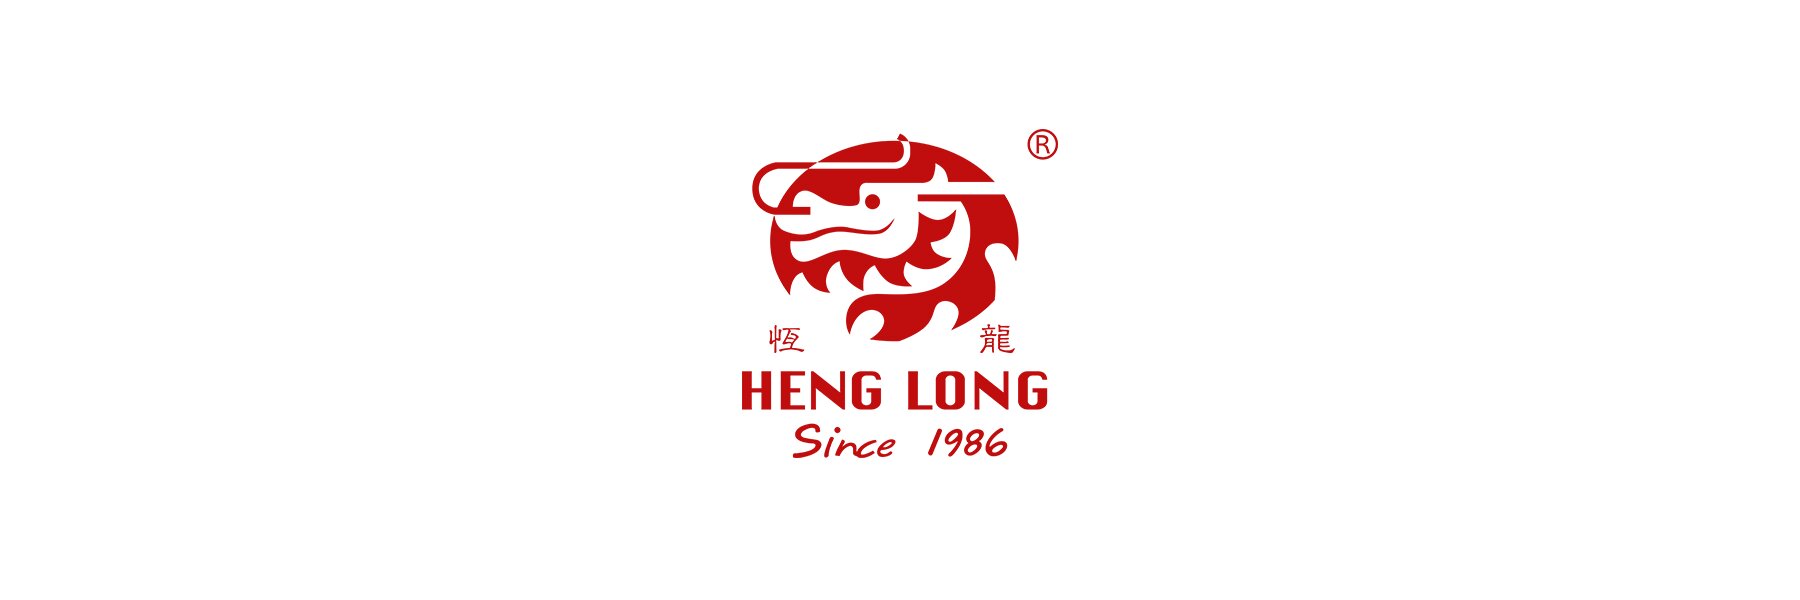 Der Hersteller Heng Long ist bekannt für seine...